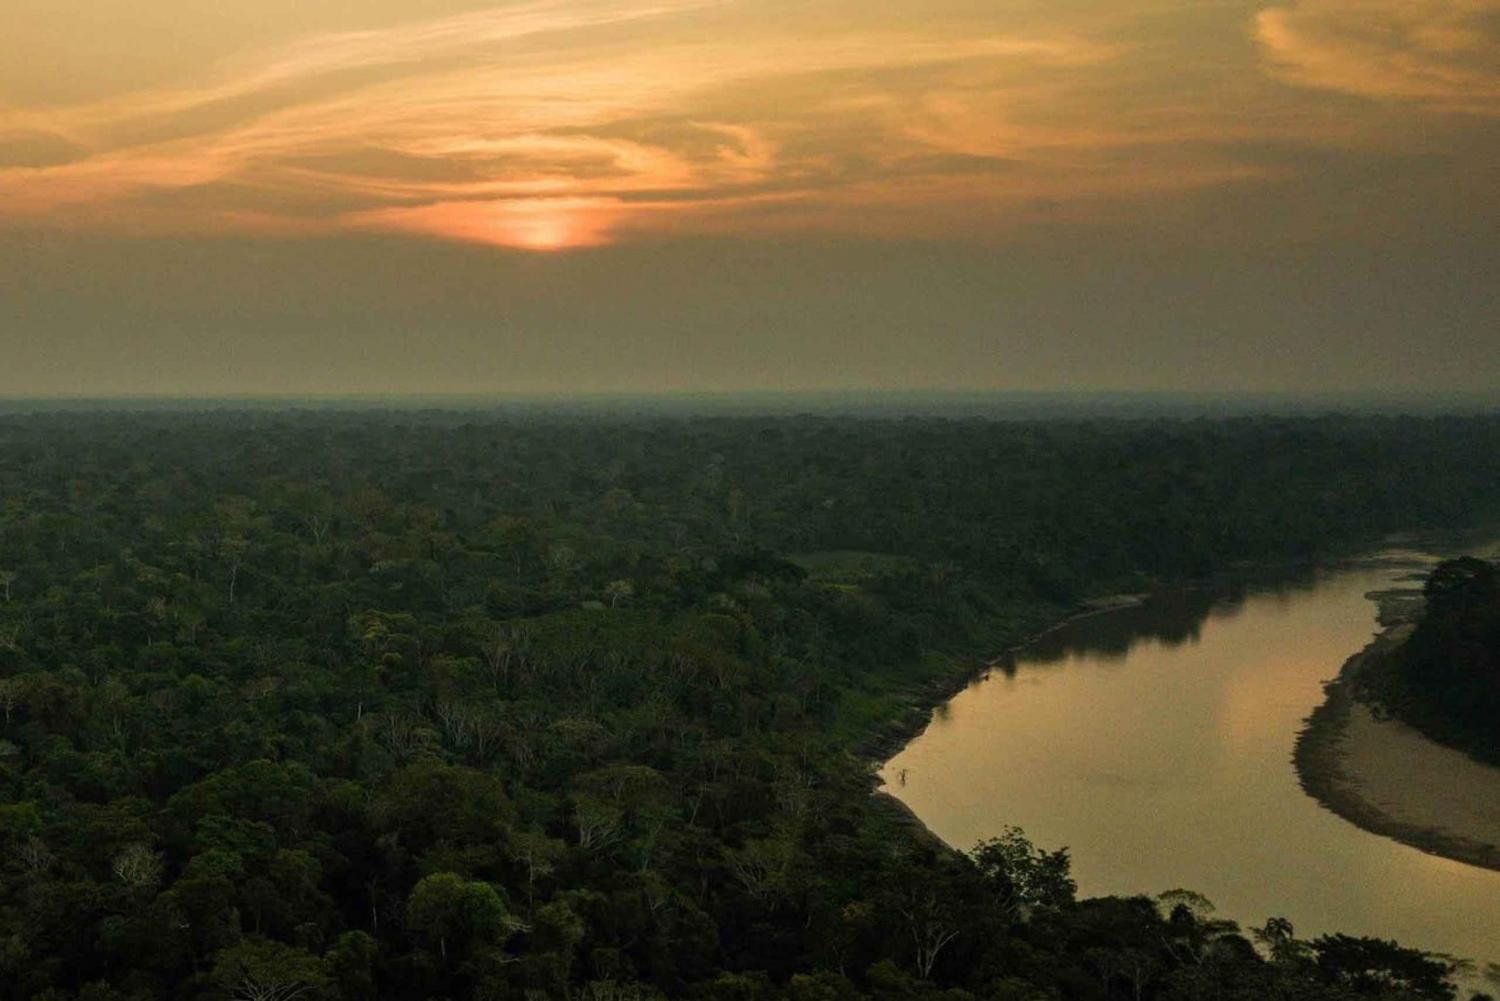 Amazon Rainforest 5 Day Tour